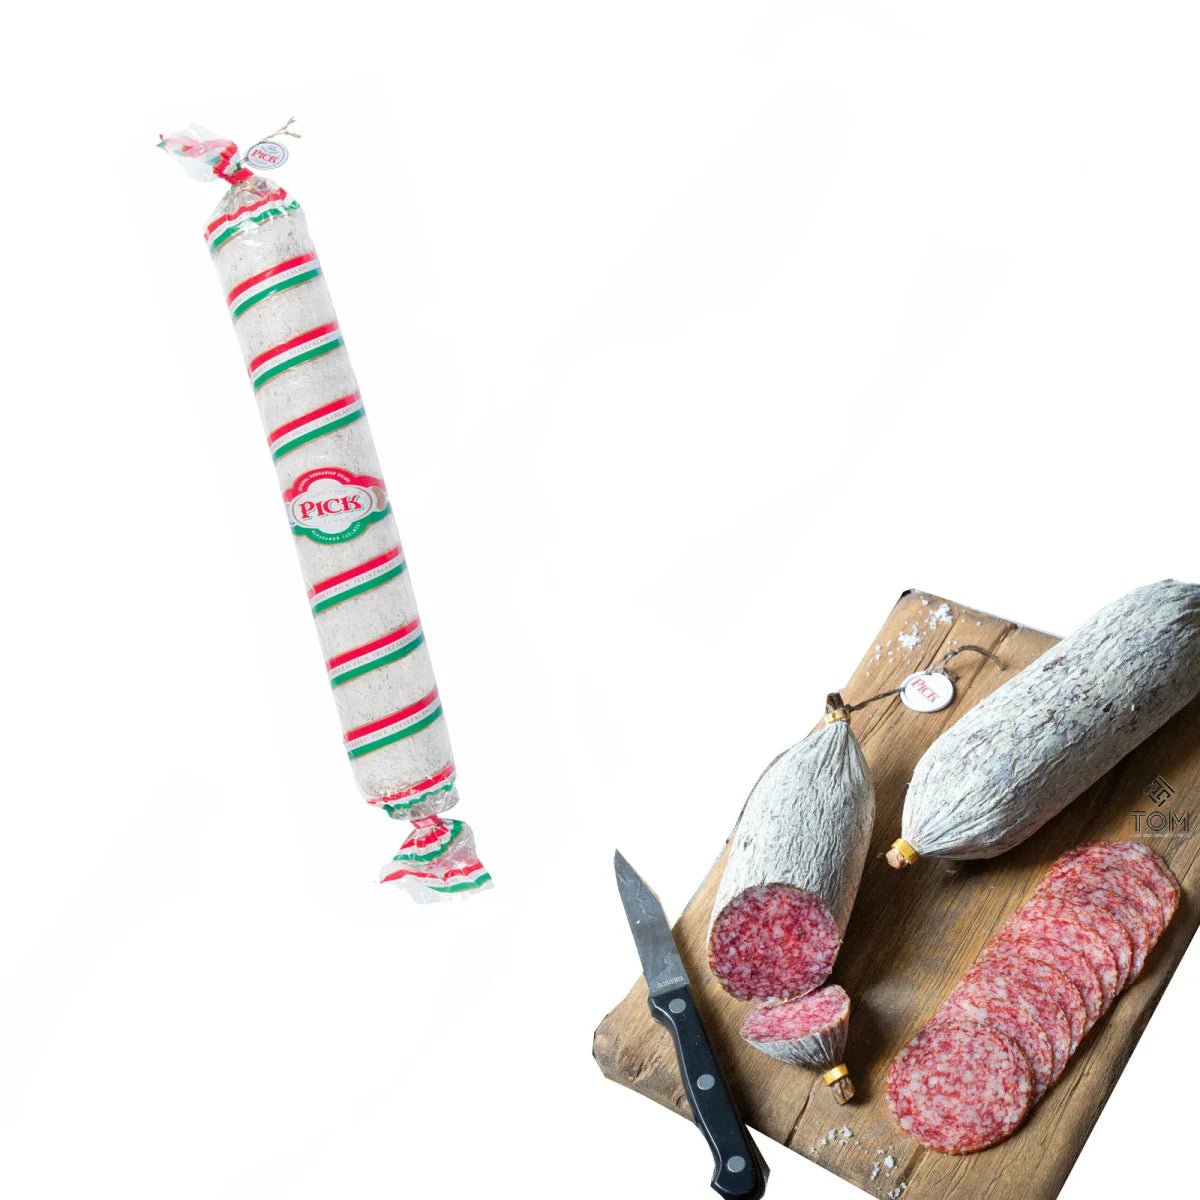 PICK original ungarische Salami - am Stück 800g, Feinkost aus Ungarn - die Rohwurstspezialität - Feinkost Delikatessen: Wurst und Fleisch Spezialitäten | Wurst-Fleisch.com